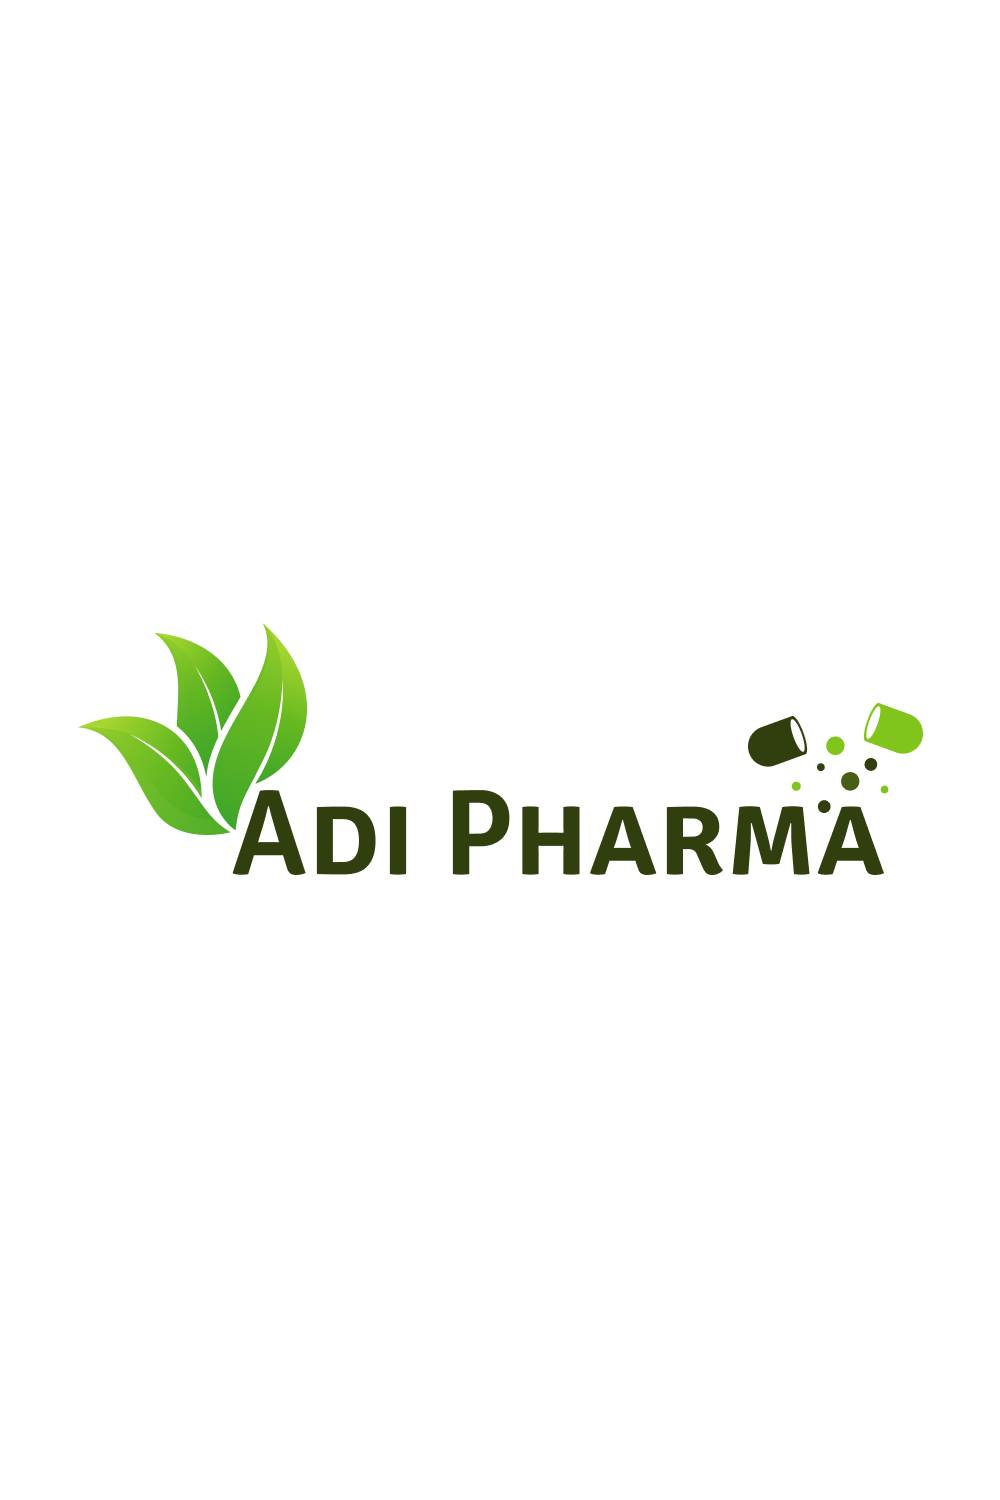 Adi Pharma Logo for 11$ pinterest preview image.